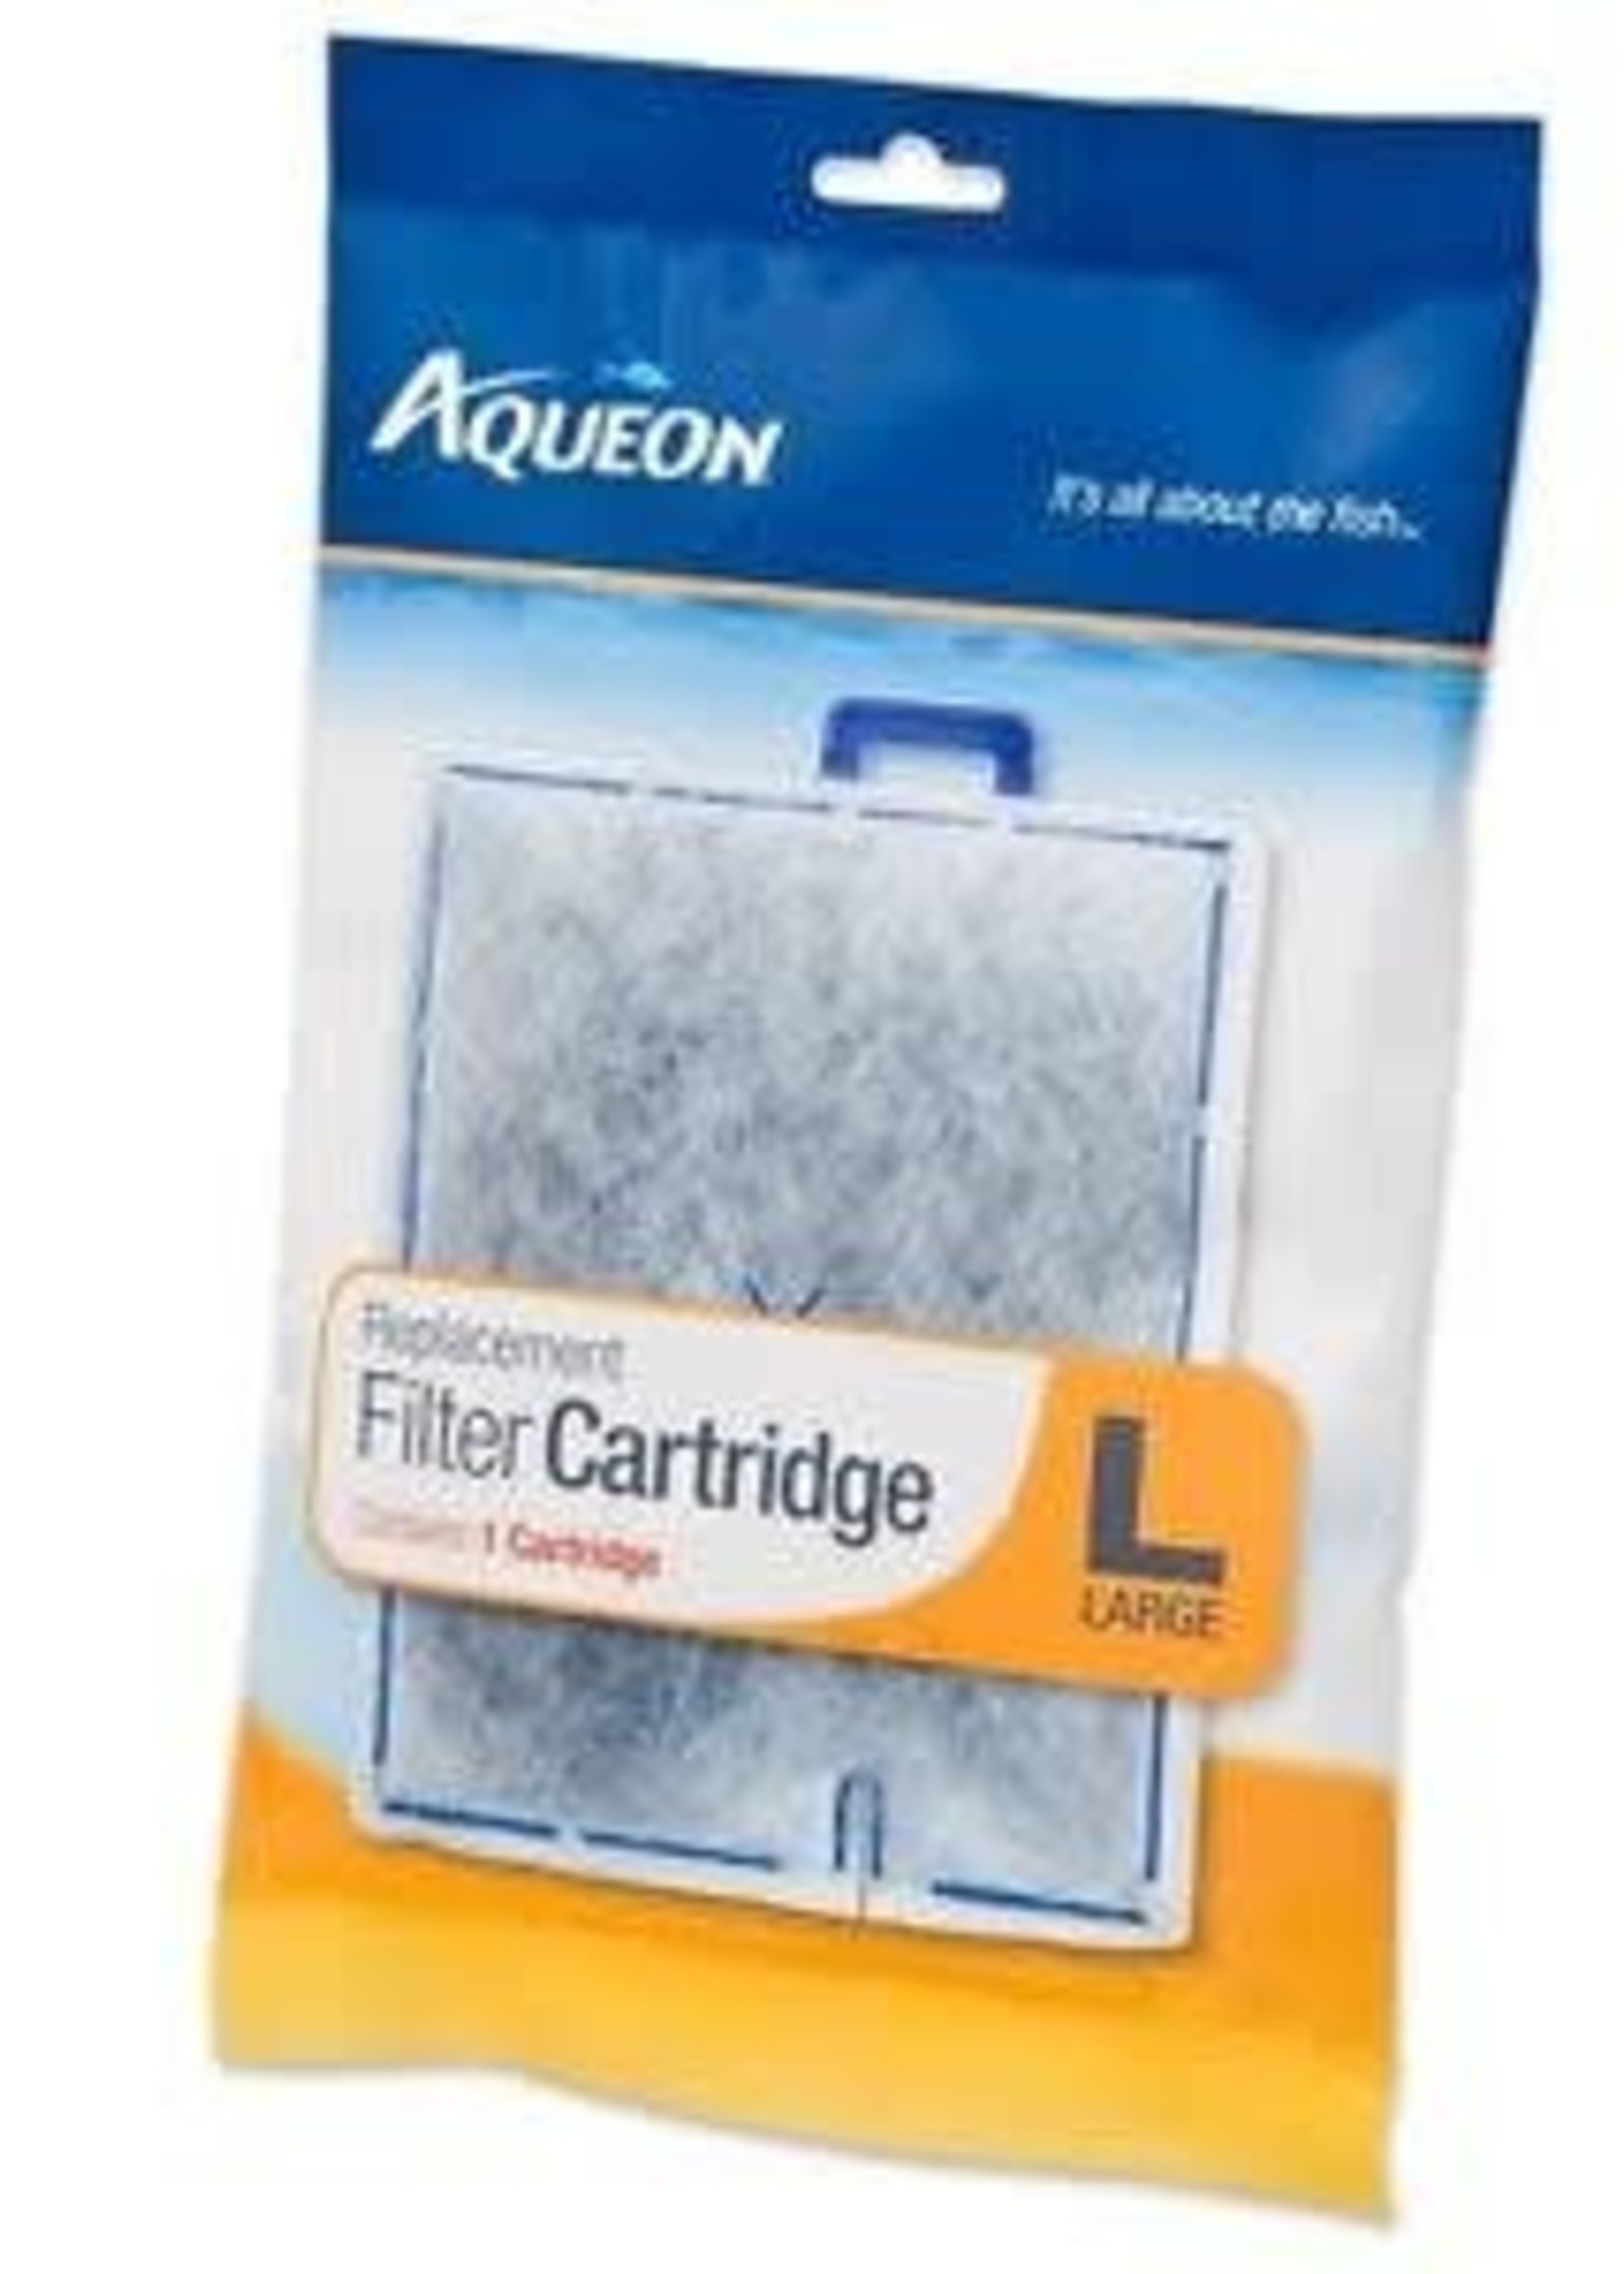 Aqueon Filter Cartridge Large 1PK